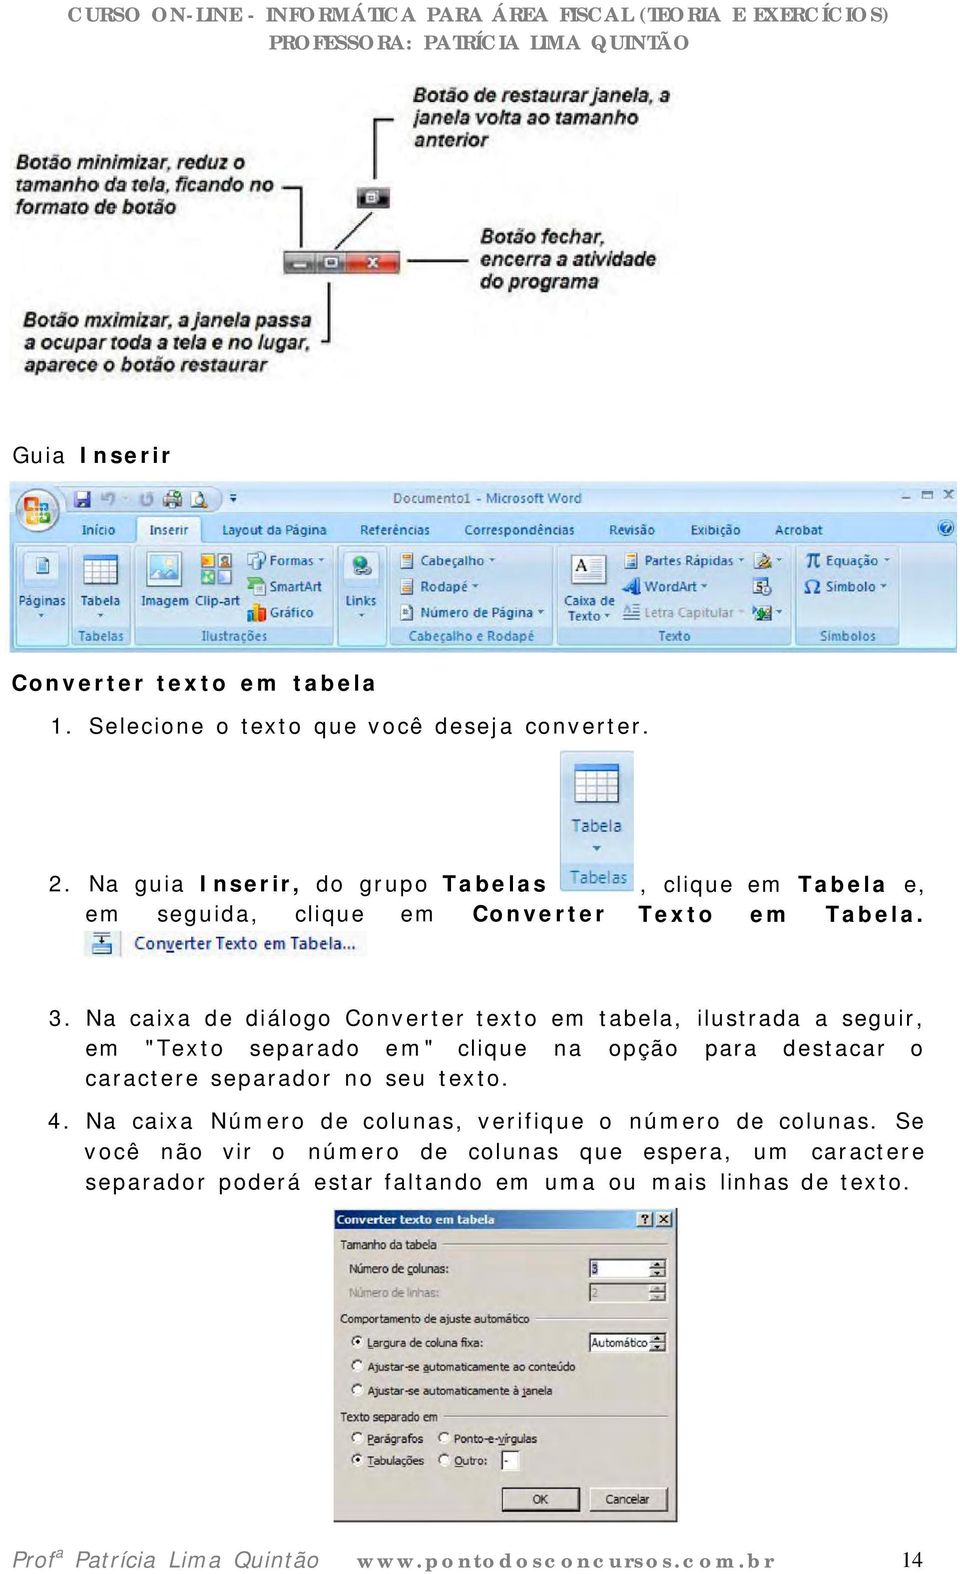 Na caixa de diálogo Converter texto em tabela, ilustrada a seguir, em "Texto separado em" clique na opção para destacar o caractere separador no seu